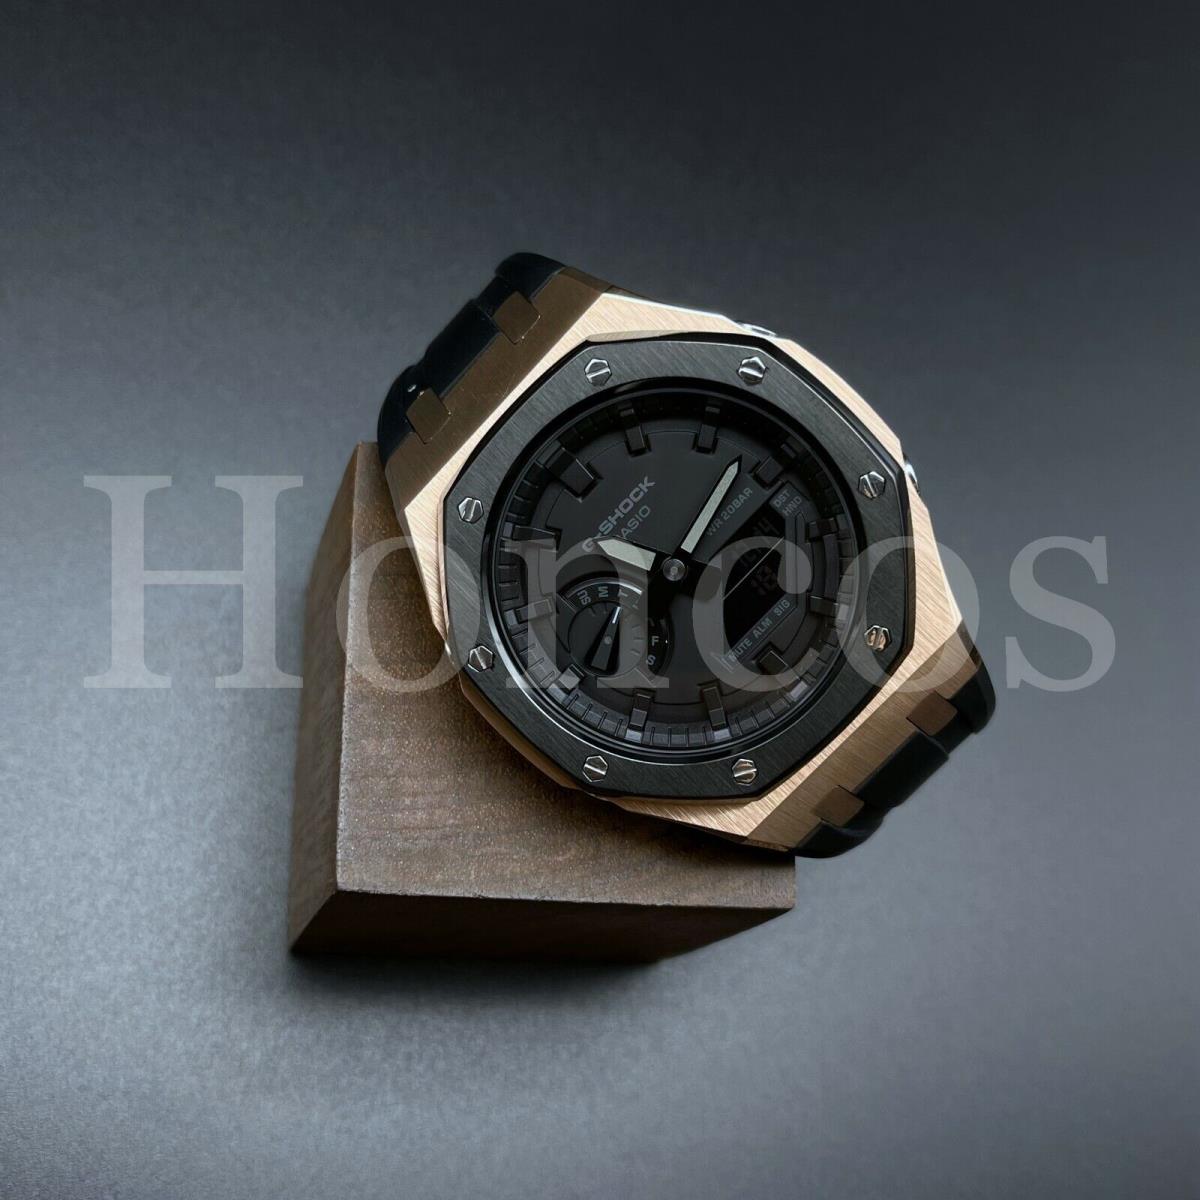 GA2100-1A1 Casioak AP Royal Oak Black Custom Made Rose Gold Black G-shock Casio